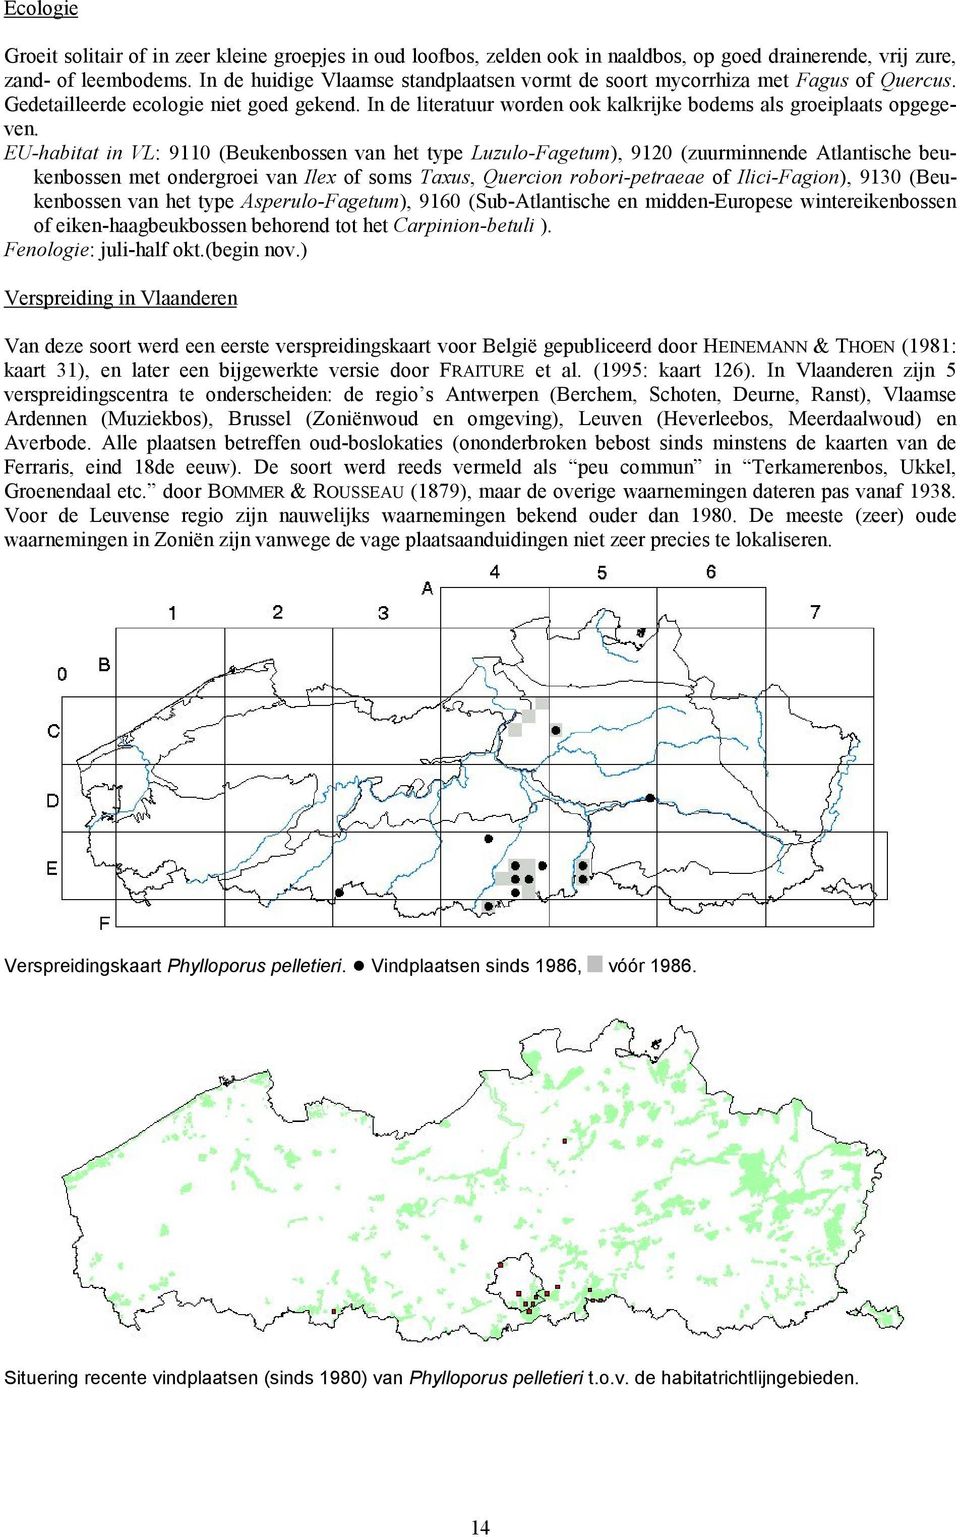 EU-habitat in VL: 9110 (Beukenbossen van het type Luzulo-Fagetum), 9120 (zuurminnende Atlantische beukenbossen met ondergroei van Ilex of soms Taxus, Quercion robori-petraeae of Ilici-Fagion), 9130